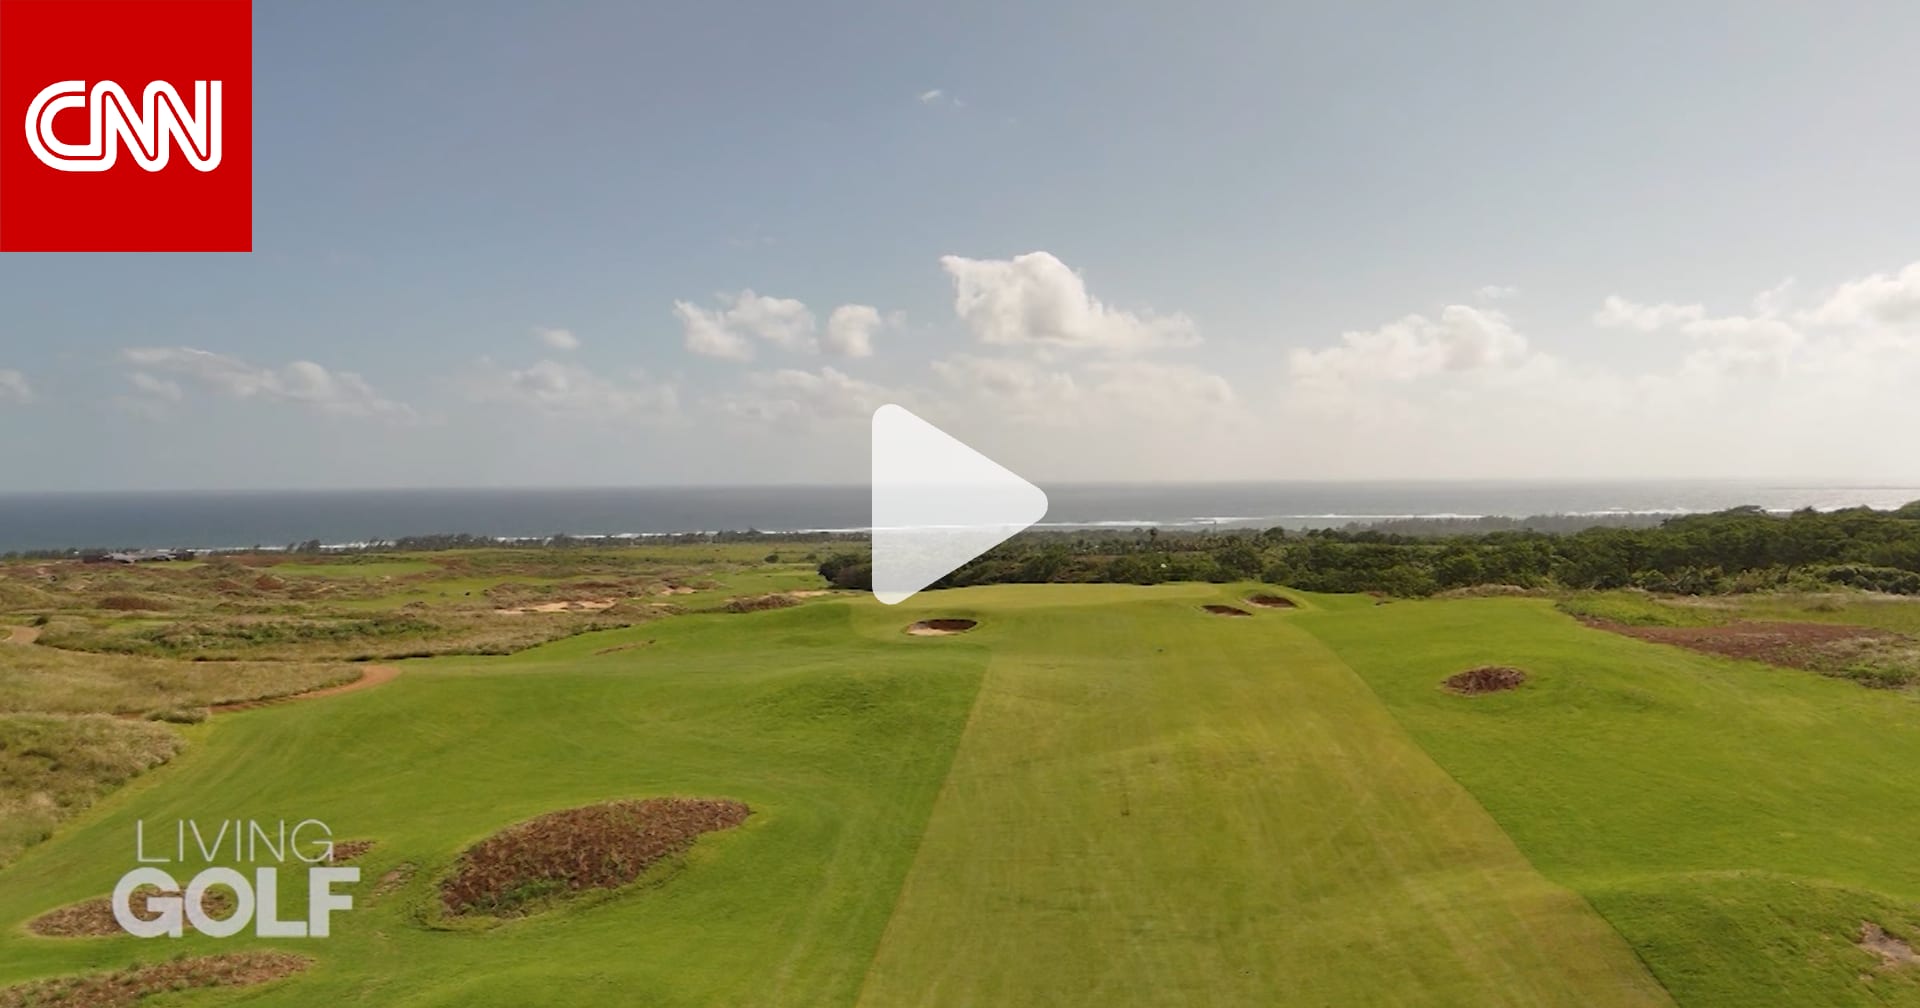 ملعب الغولف هذا في موريشيوس يتمتع بمنظر خلّاب للمحيط الهندي